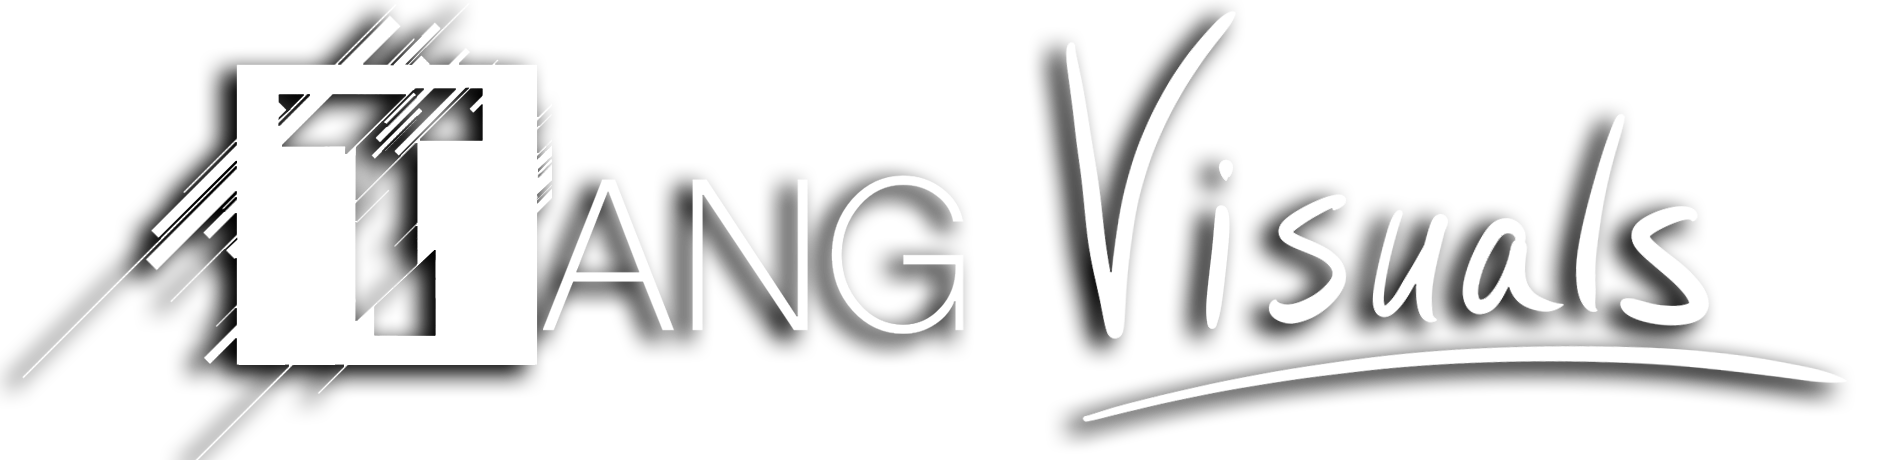 Tang Visual Logo